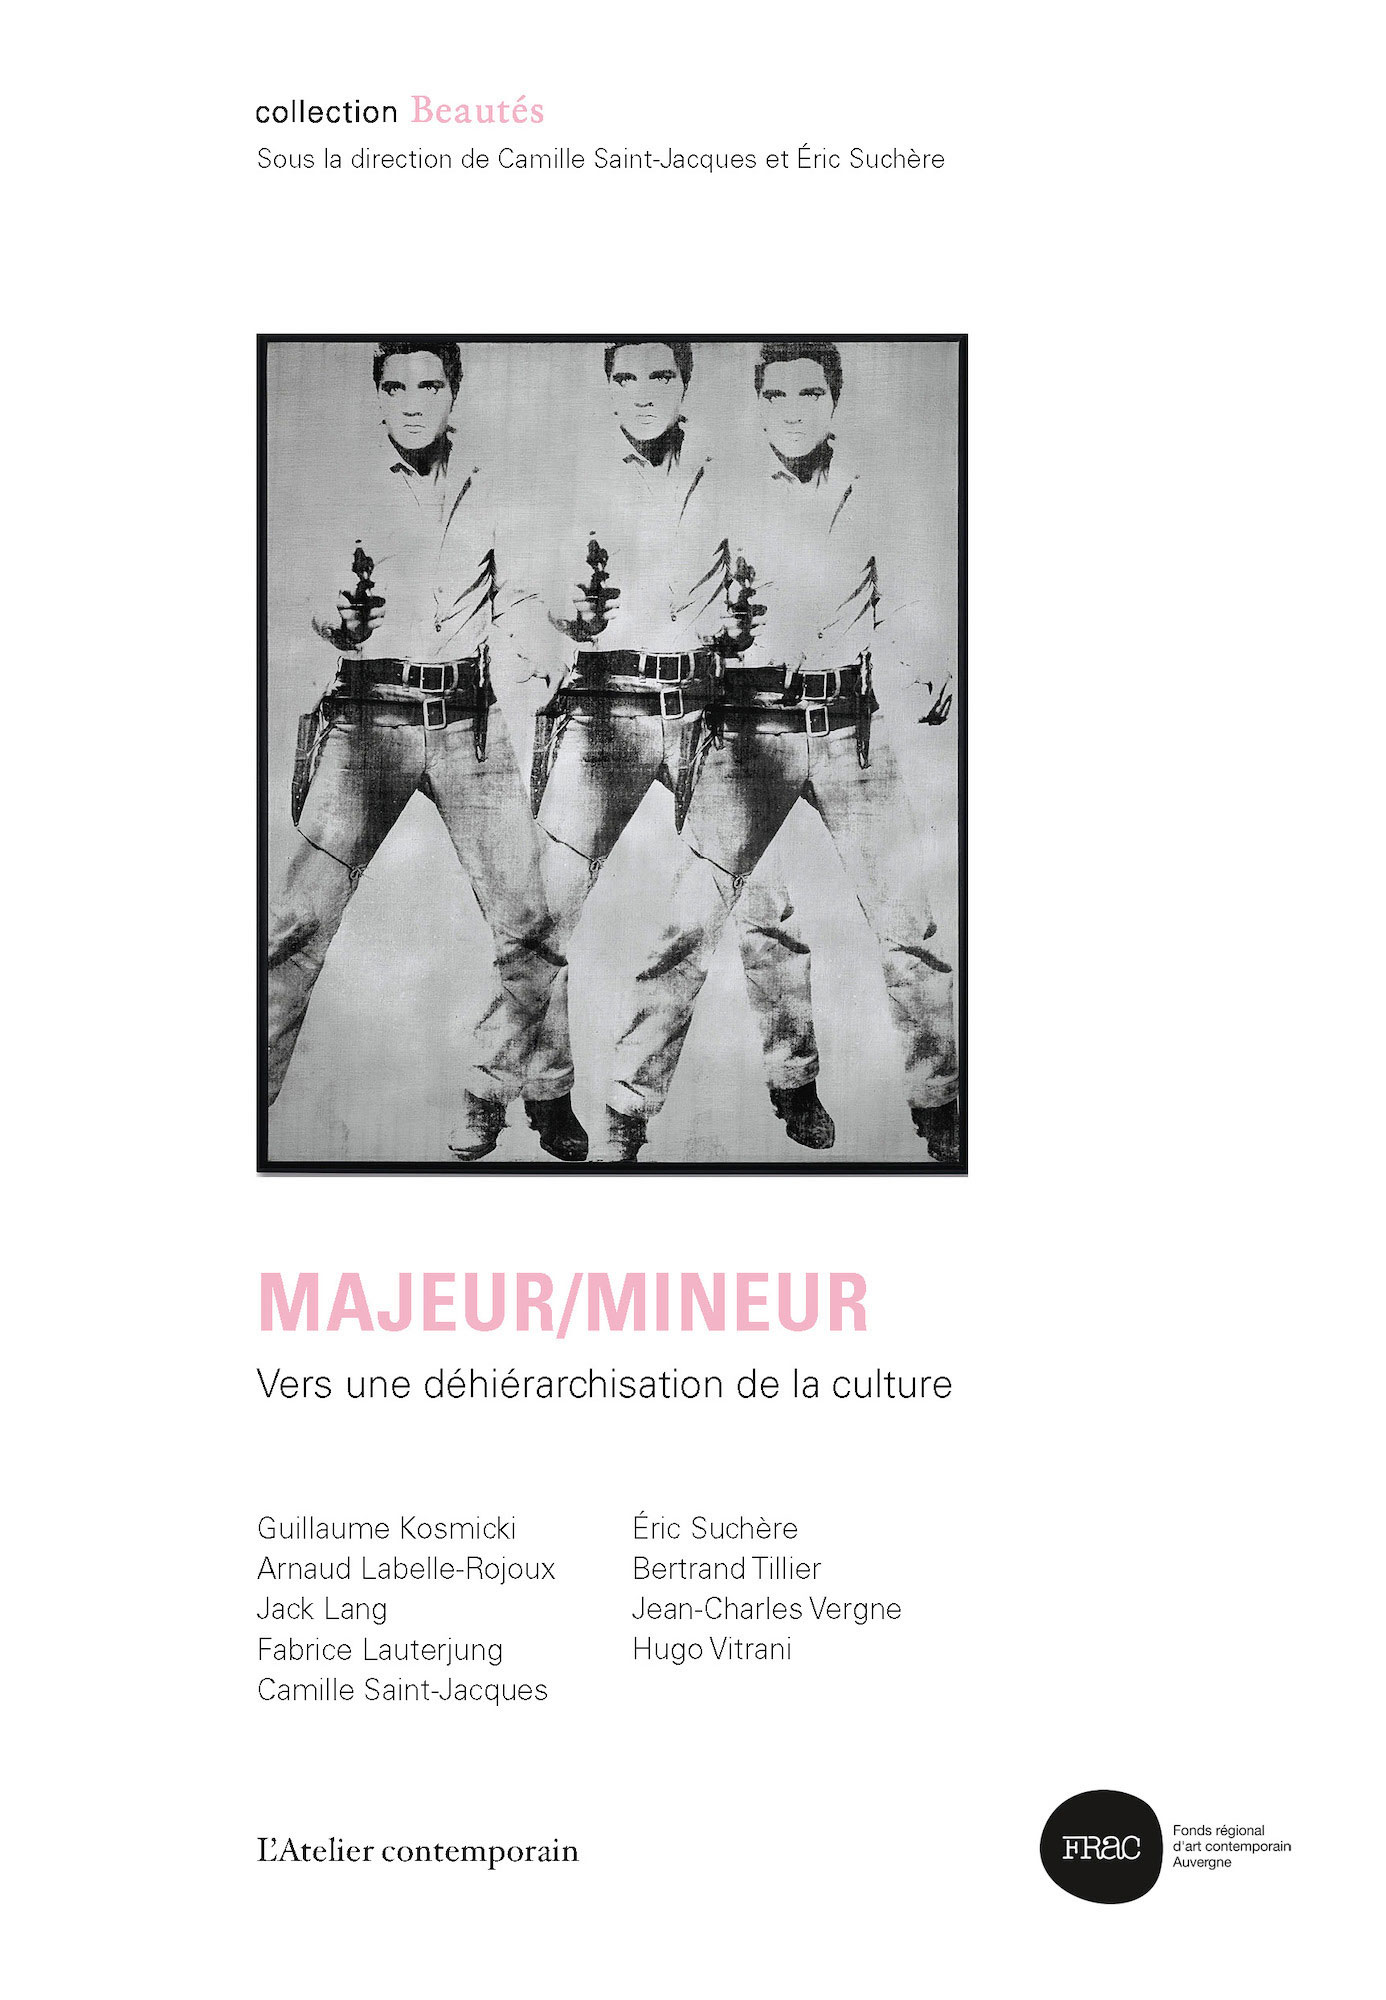 Beautés, Majeur / mineur, vers une déhiérarchisation de la culture, L’Atelier contemporain / Frac Auvergne (couverture)